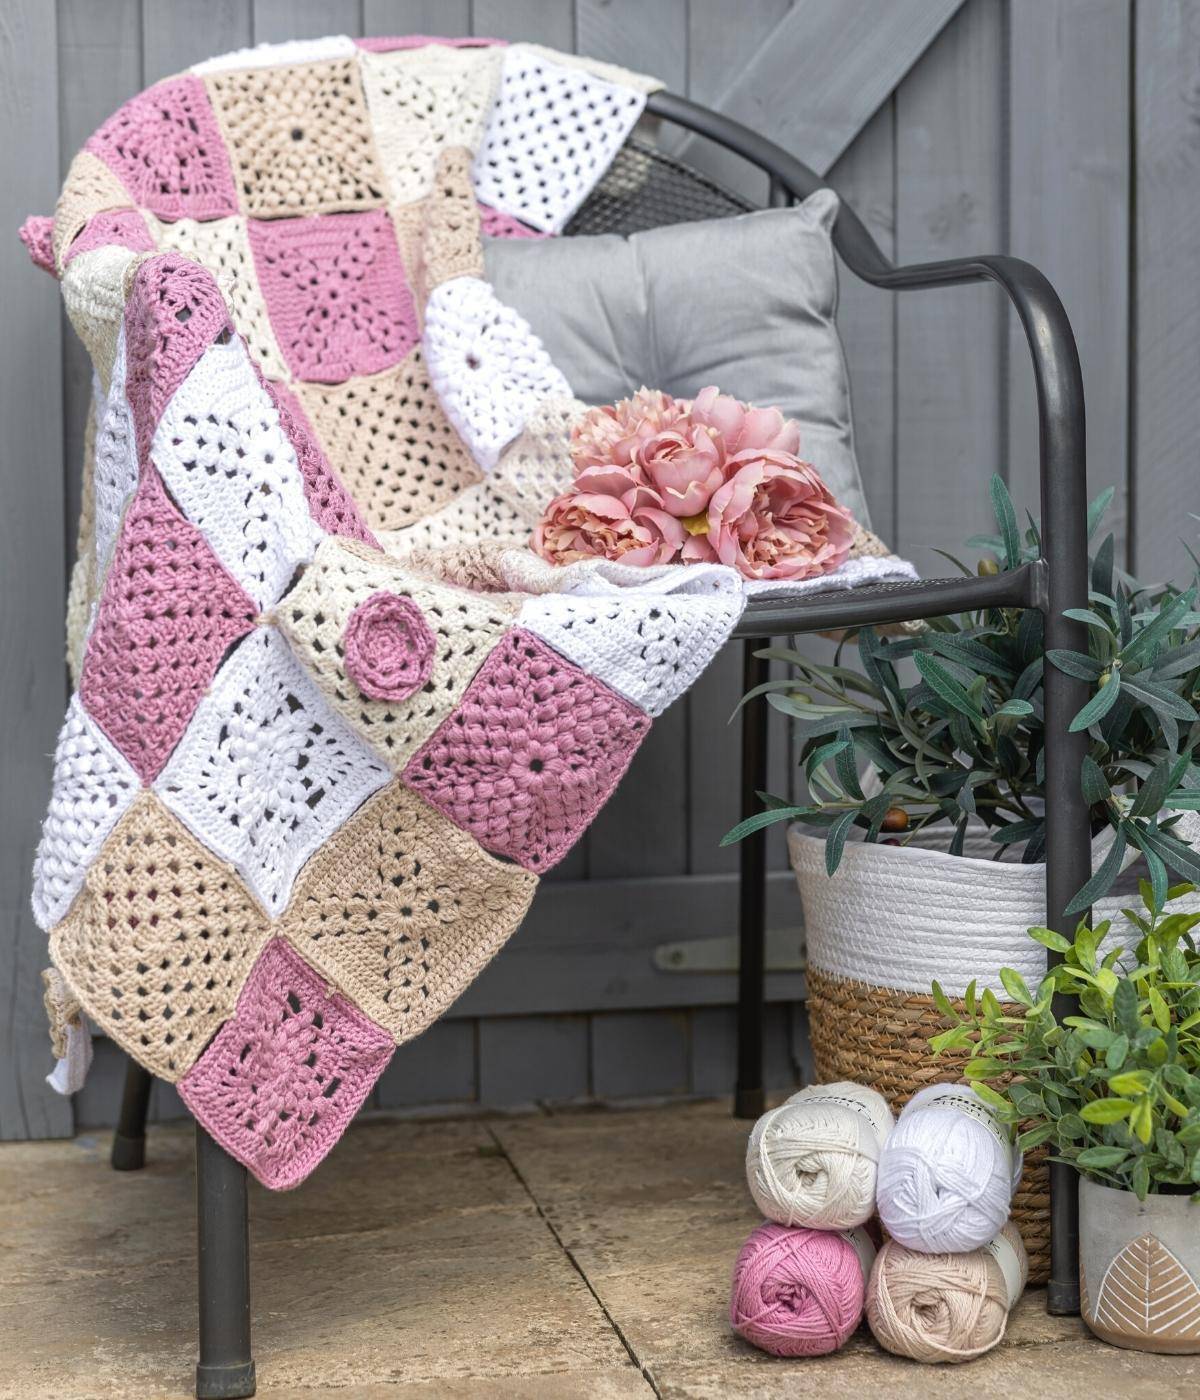 Rose Garden Crochet Blanket in Emu Cotton DK (3009) | The Knitting Network